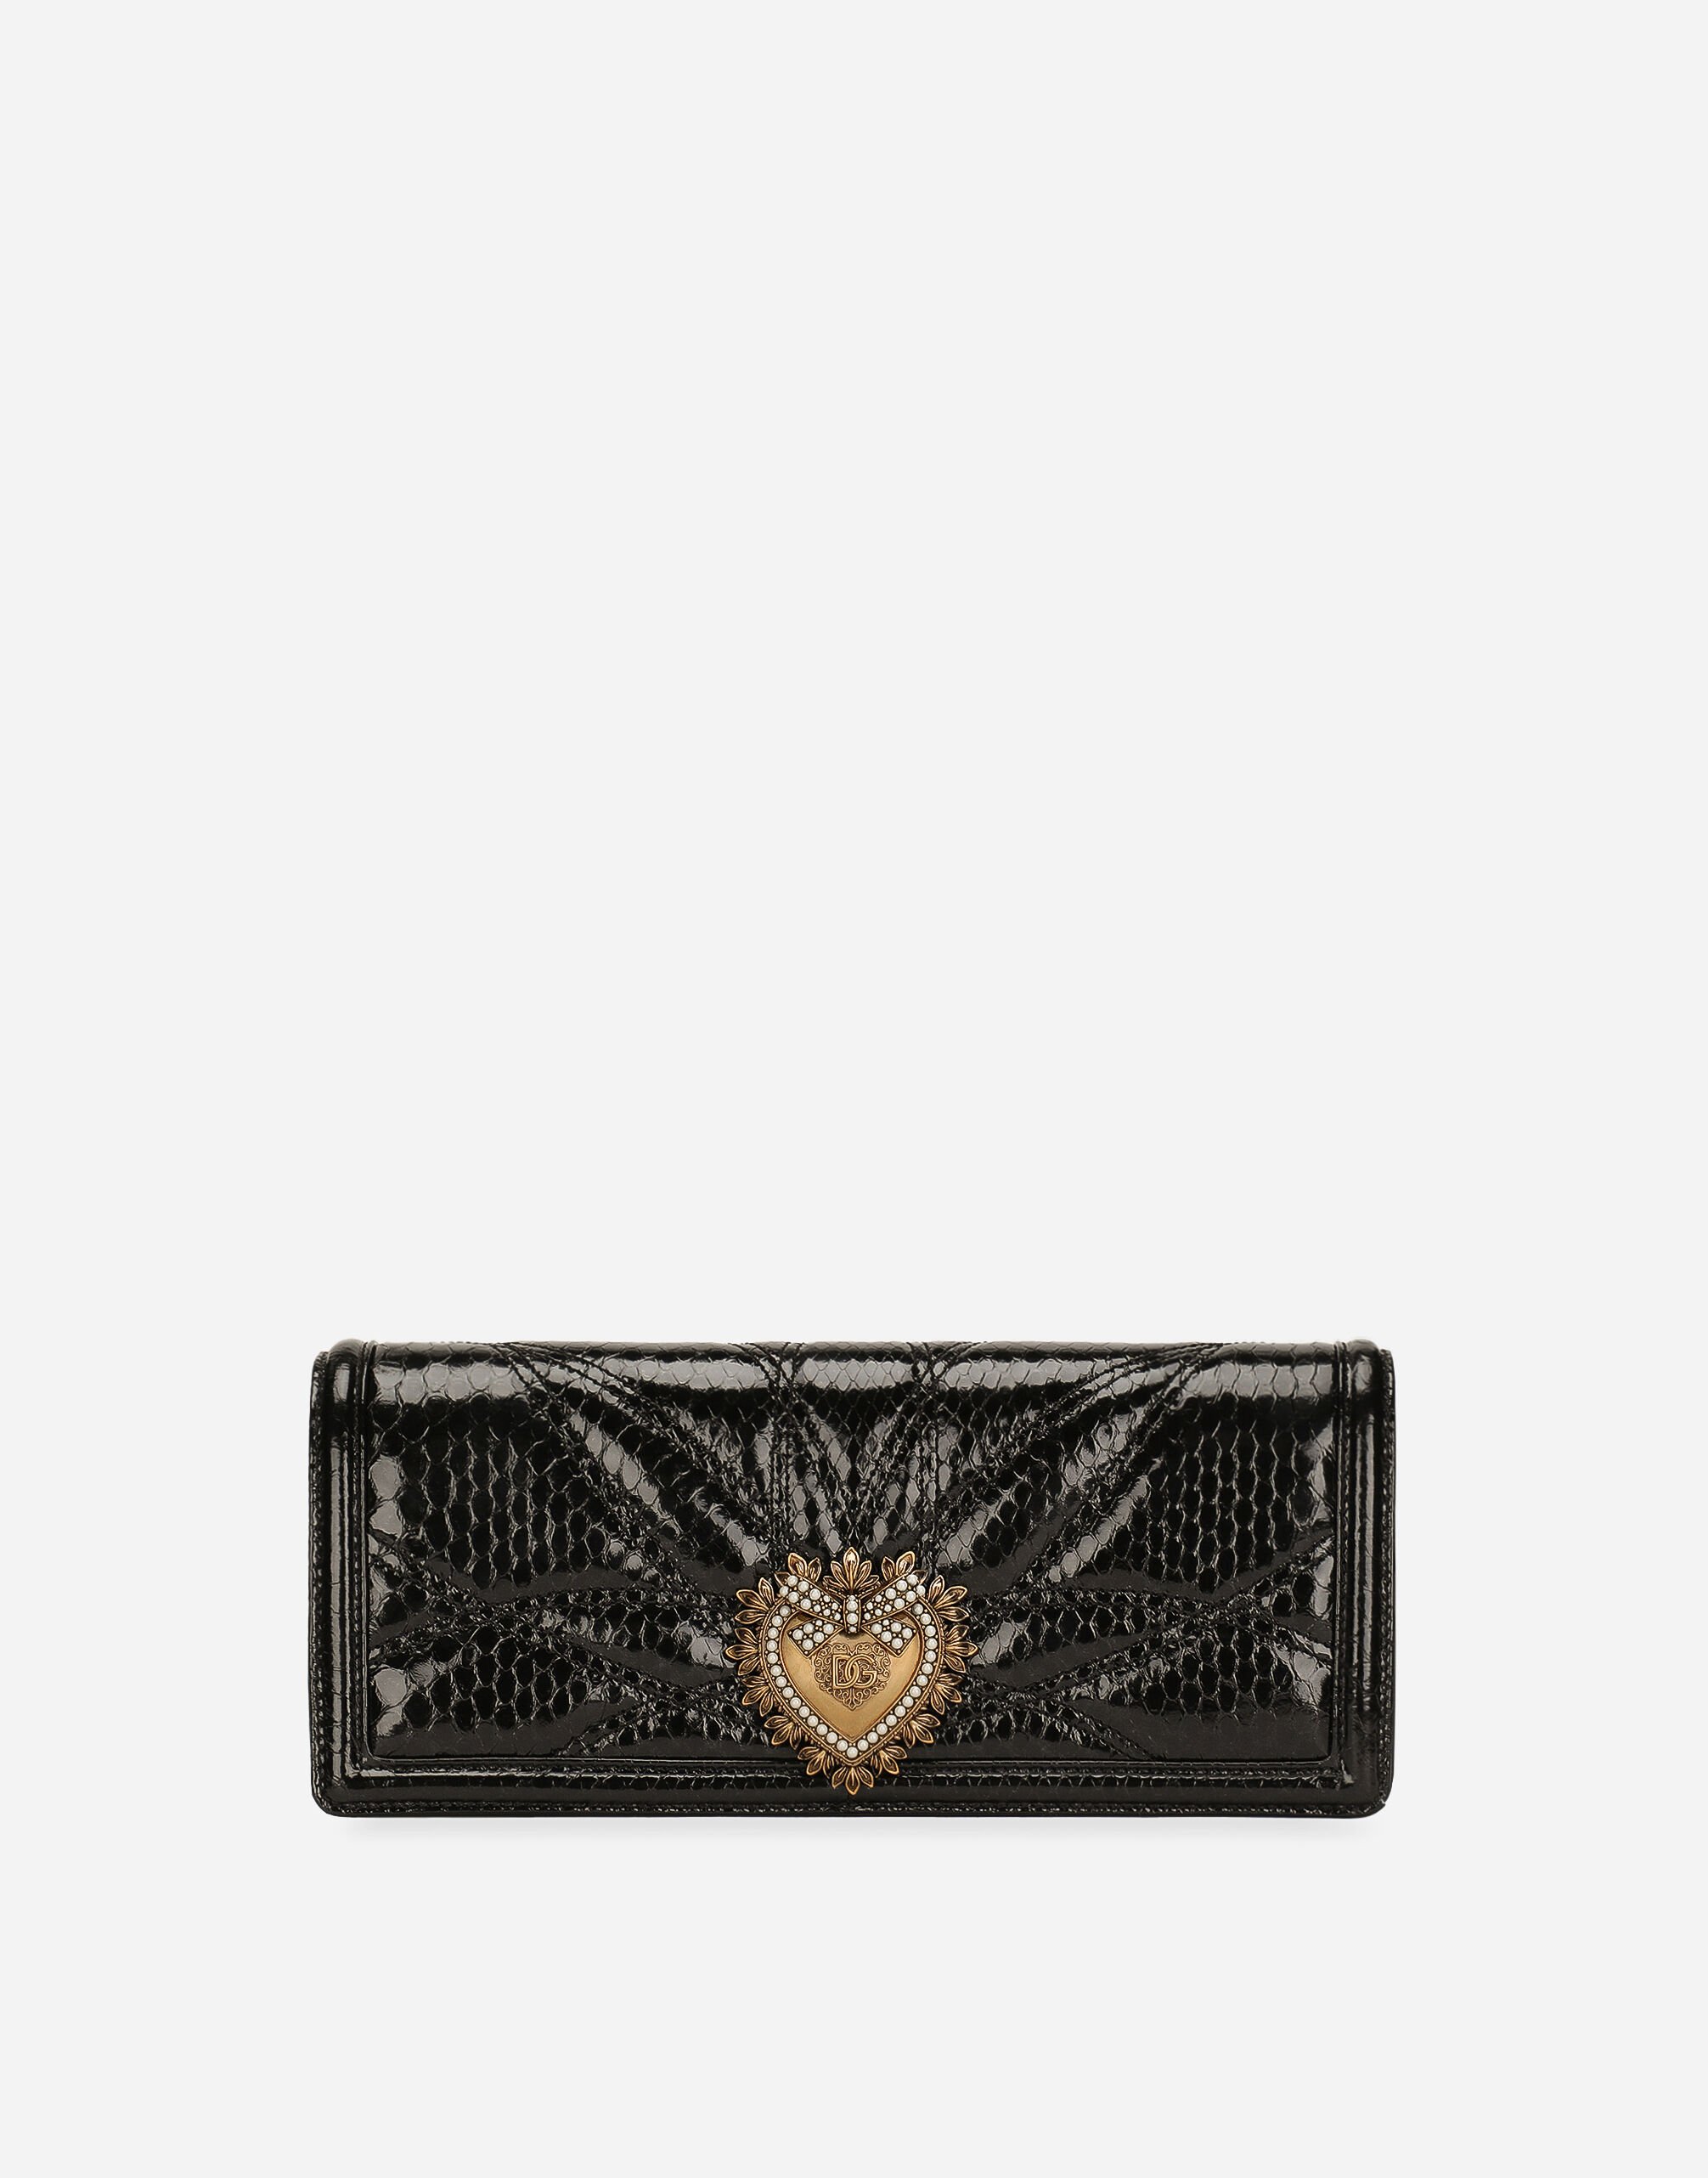 Dolce & Gabbana Devotion bag Black BB7100AW437